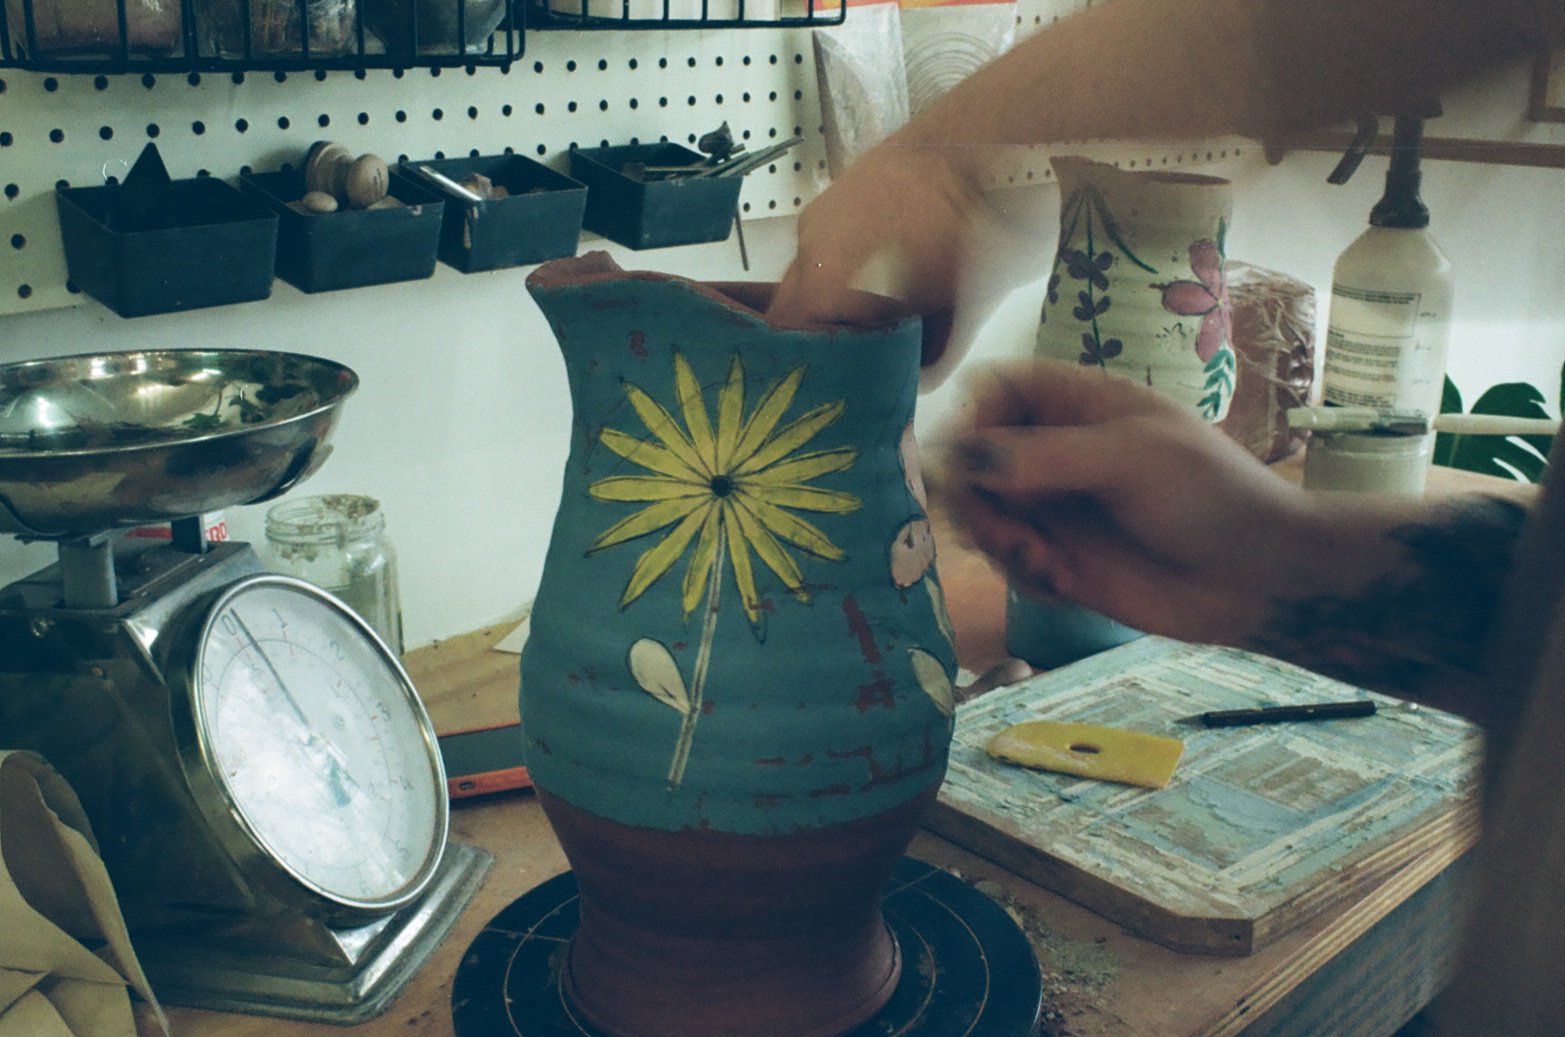 A degree in Ceramics